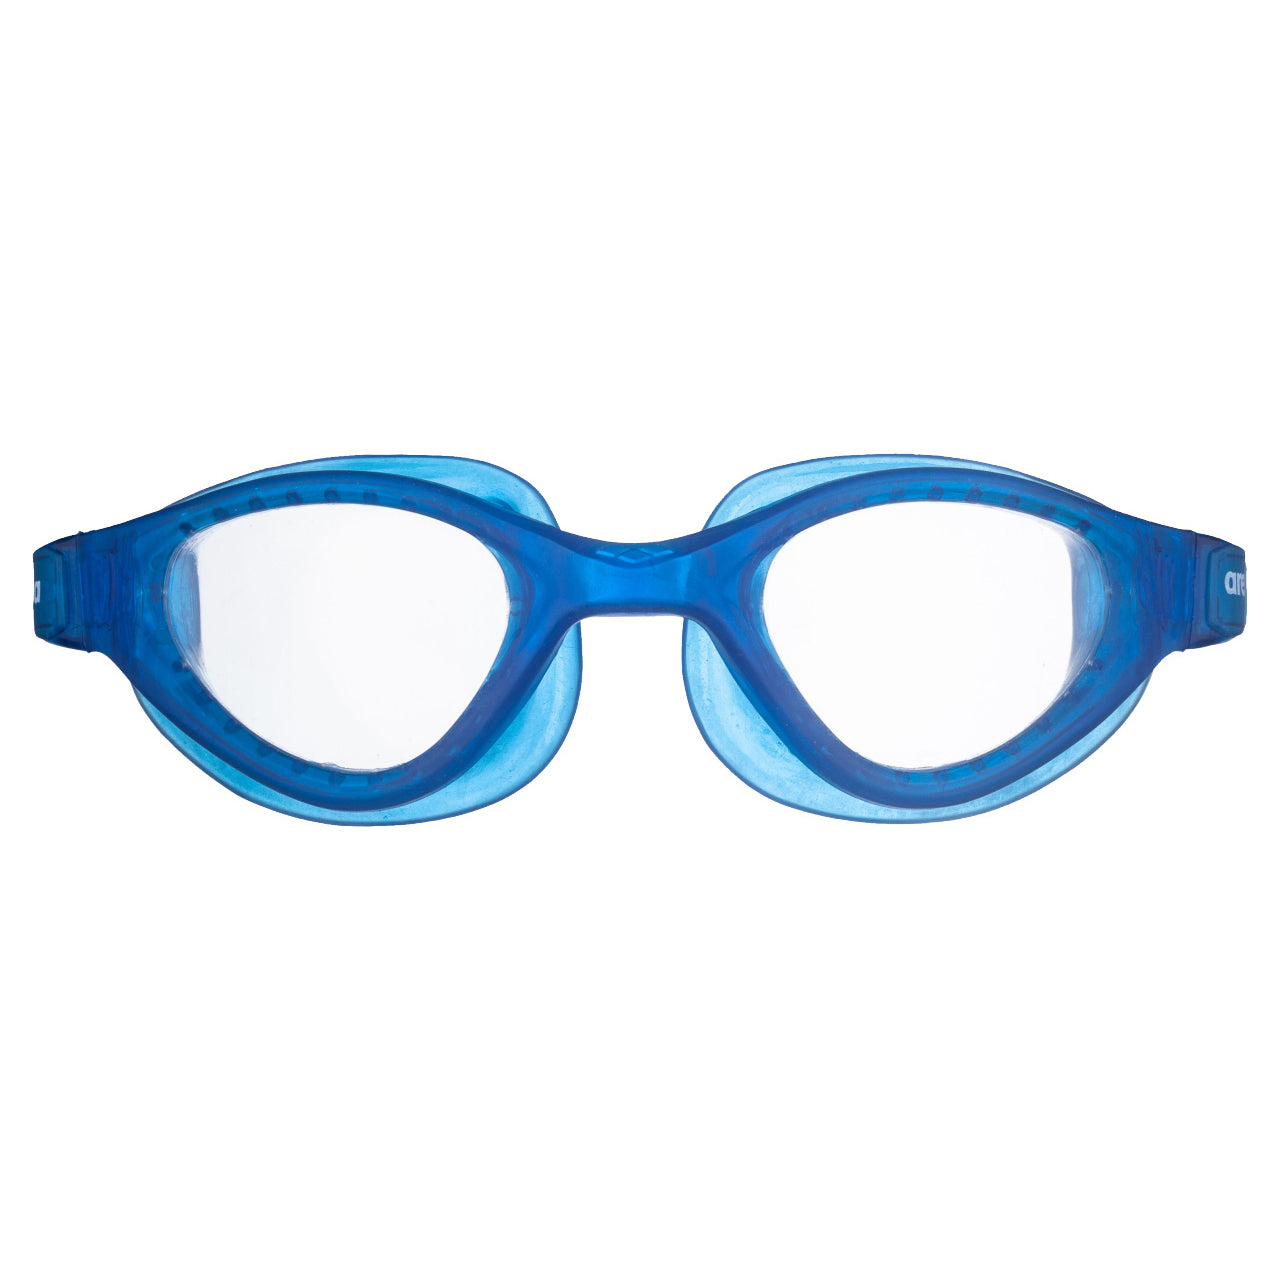 Arena Cruiser Evo svømmebrille - Klar/Blå